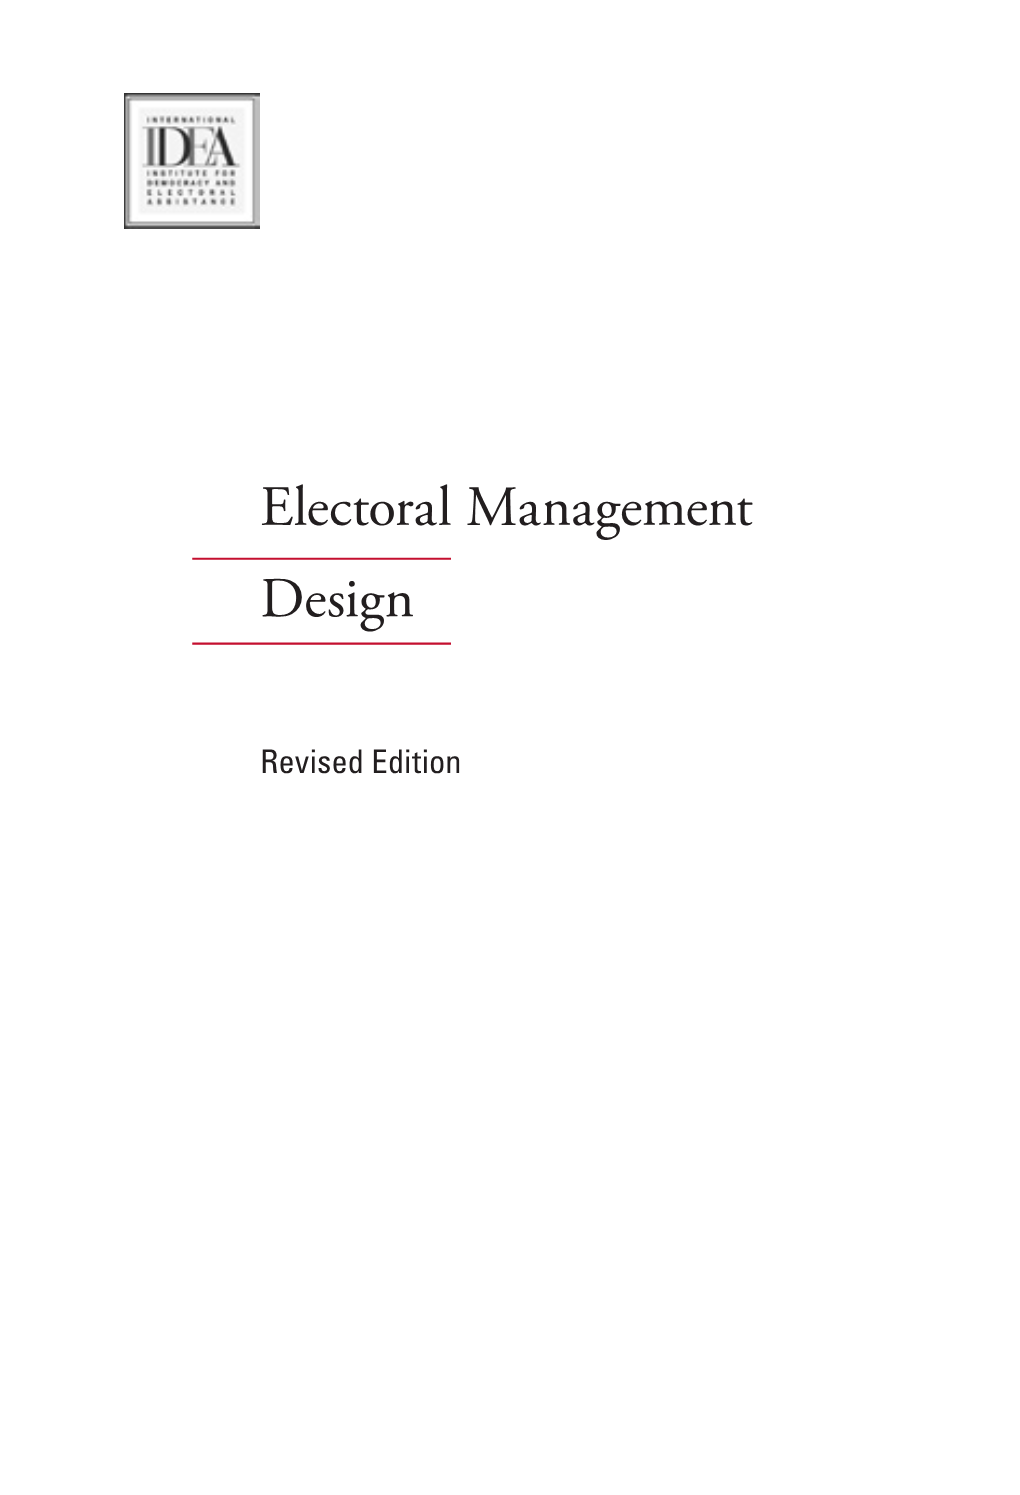 Electoral Management Design